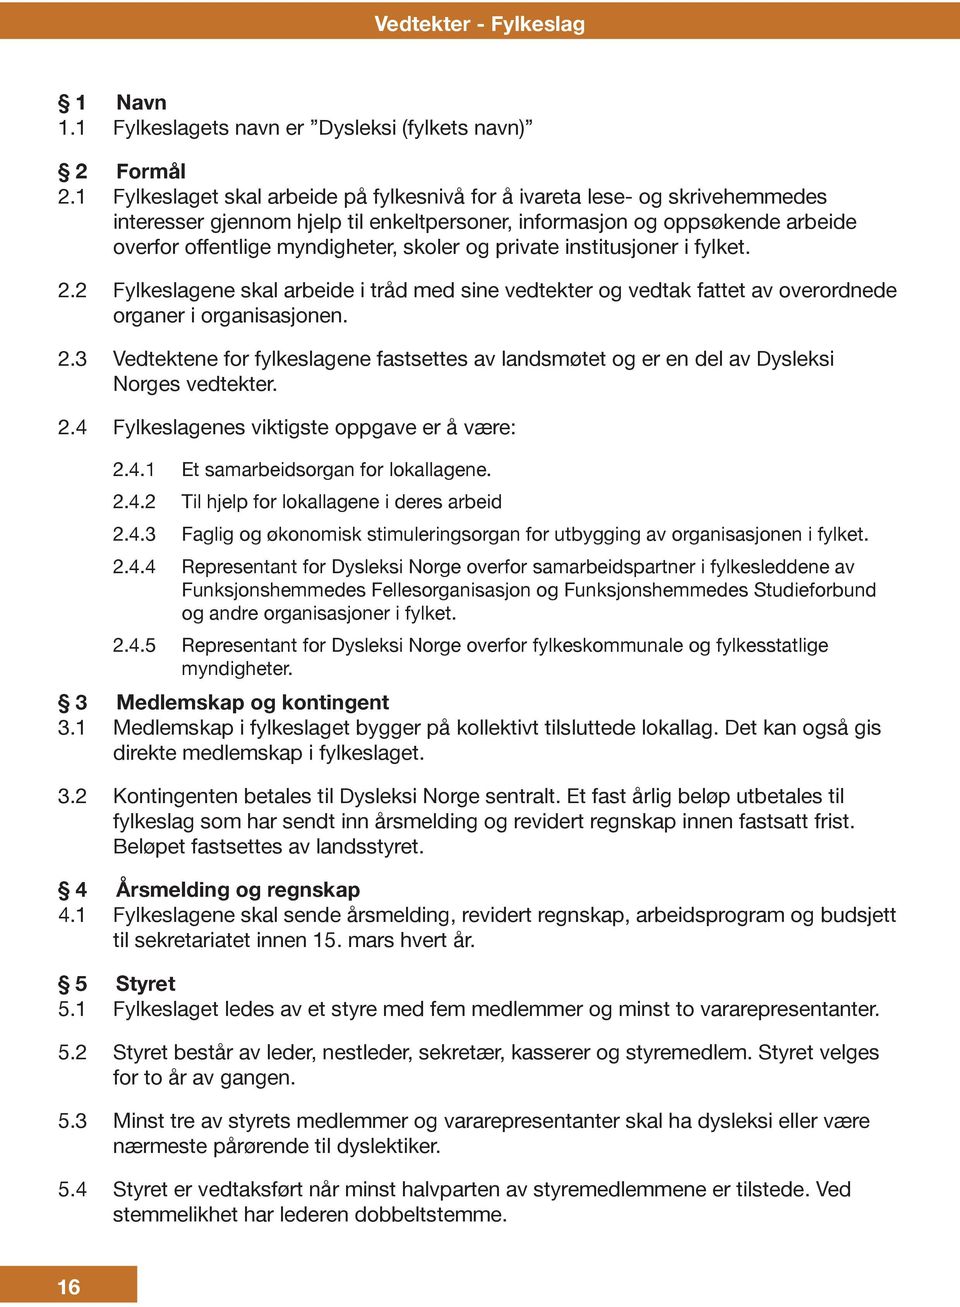 private institusjoner i fylket. 2.2 Fylkeslagene skal arbeide i tråd med sine vedtekter og vedtak fattet av overordnede organer i organisasjonen. 2.3 Vedtektene for fylkeslagene fastsettes av landsmøtet og er en del av Dysleksi Norges vedtekter.